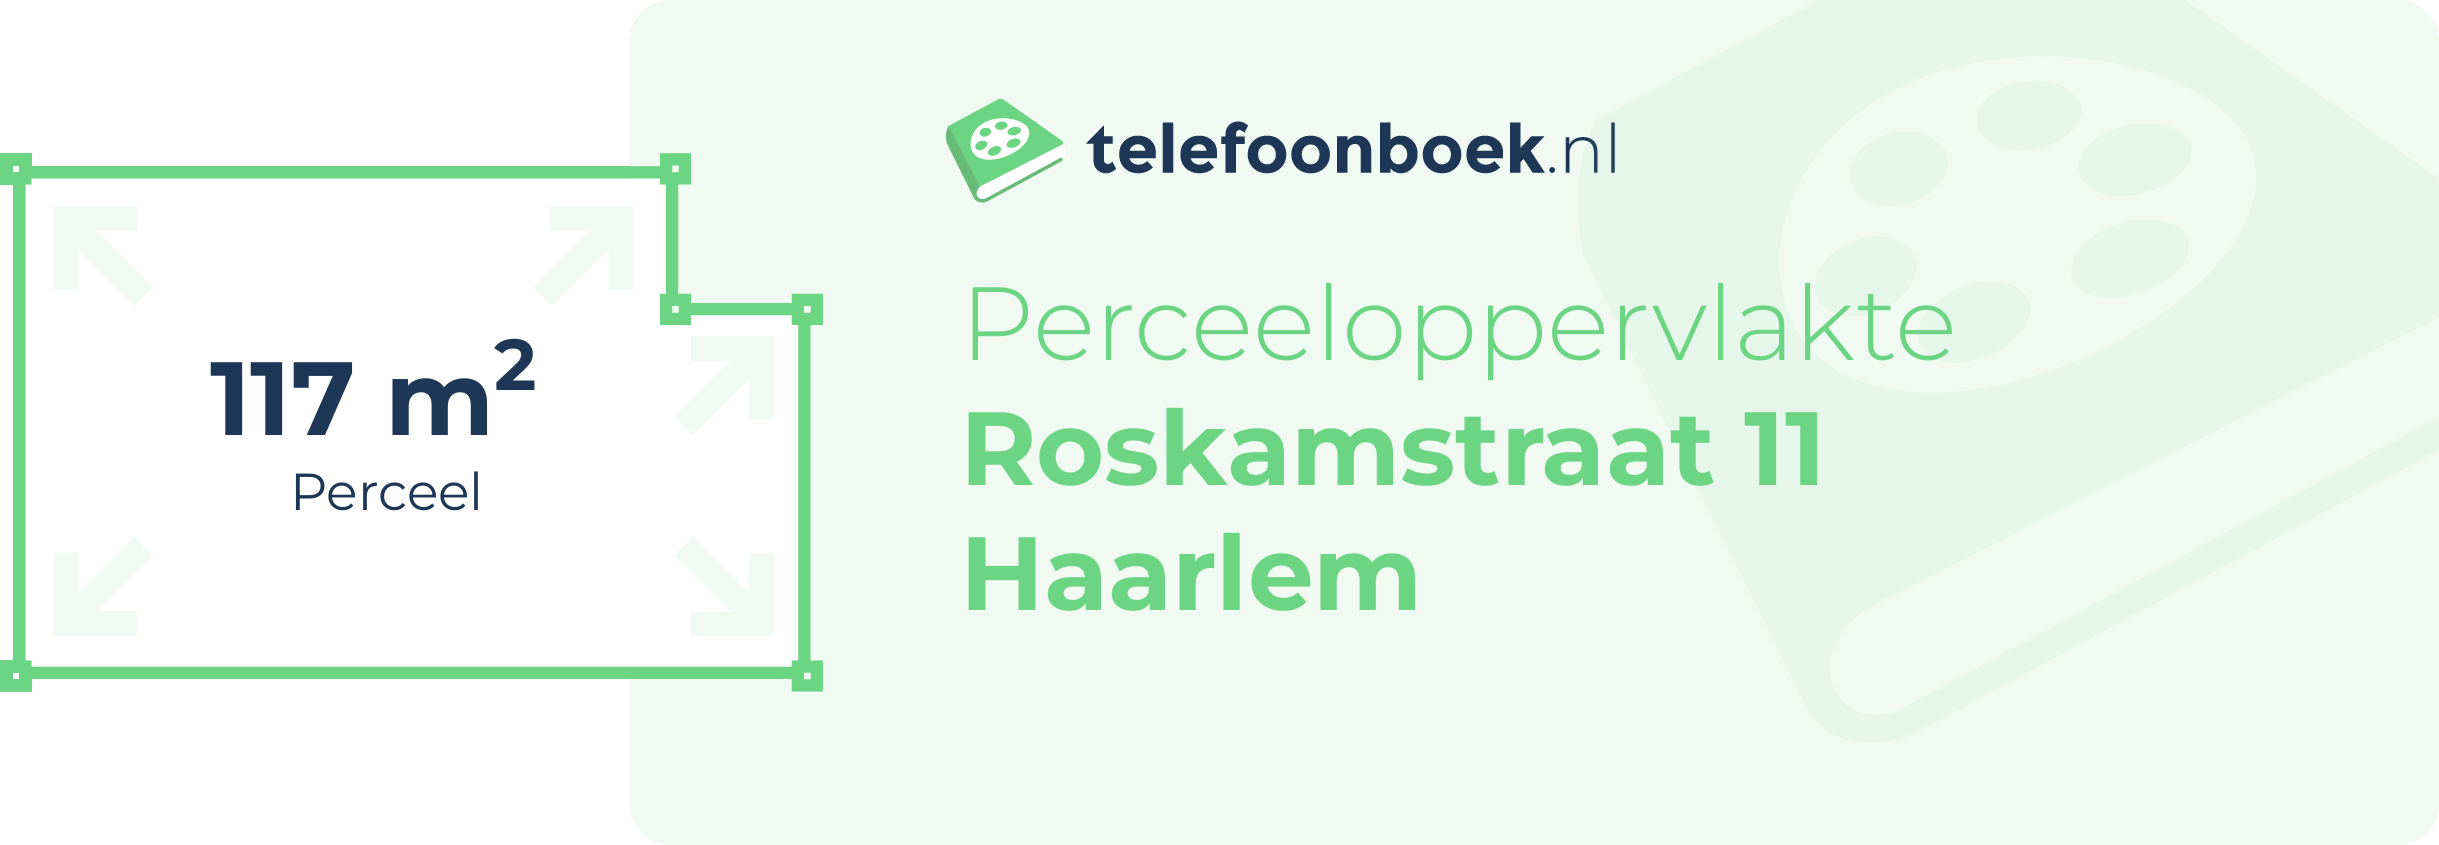 Perceeloppervlakte Roskamstraat 11 Haarlem